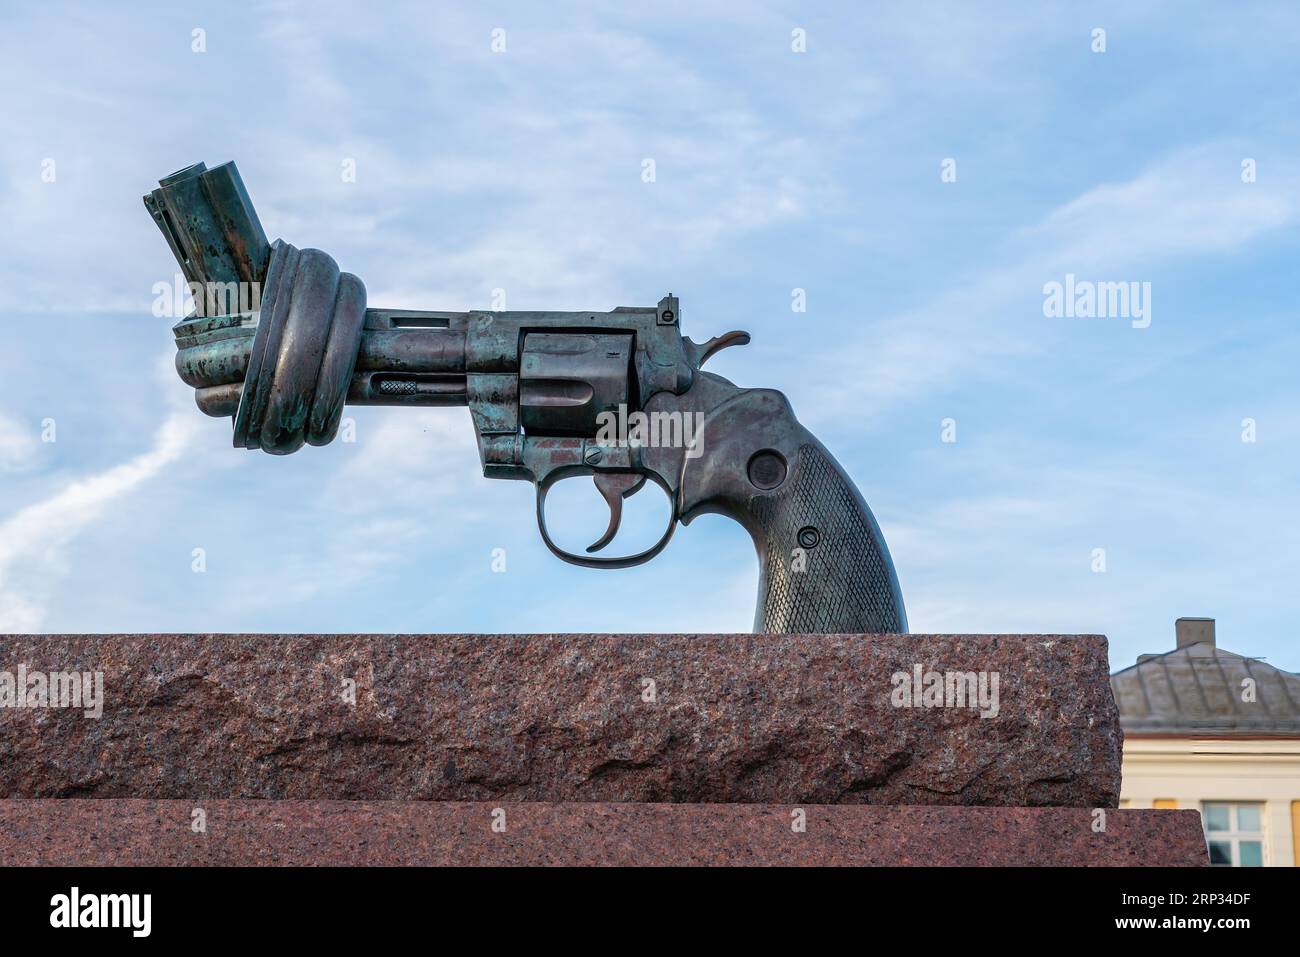 Knotted Gun - Gewaltfreie Skulptur von Carl Fredrik Reutersward - Malmö, Schweden Stockfoto